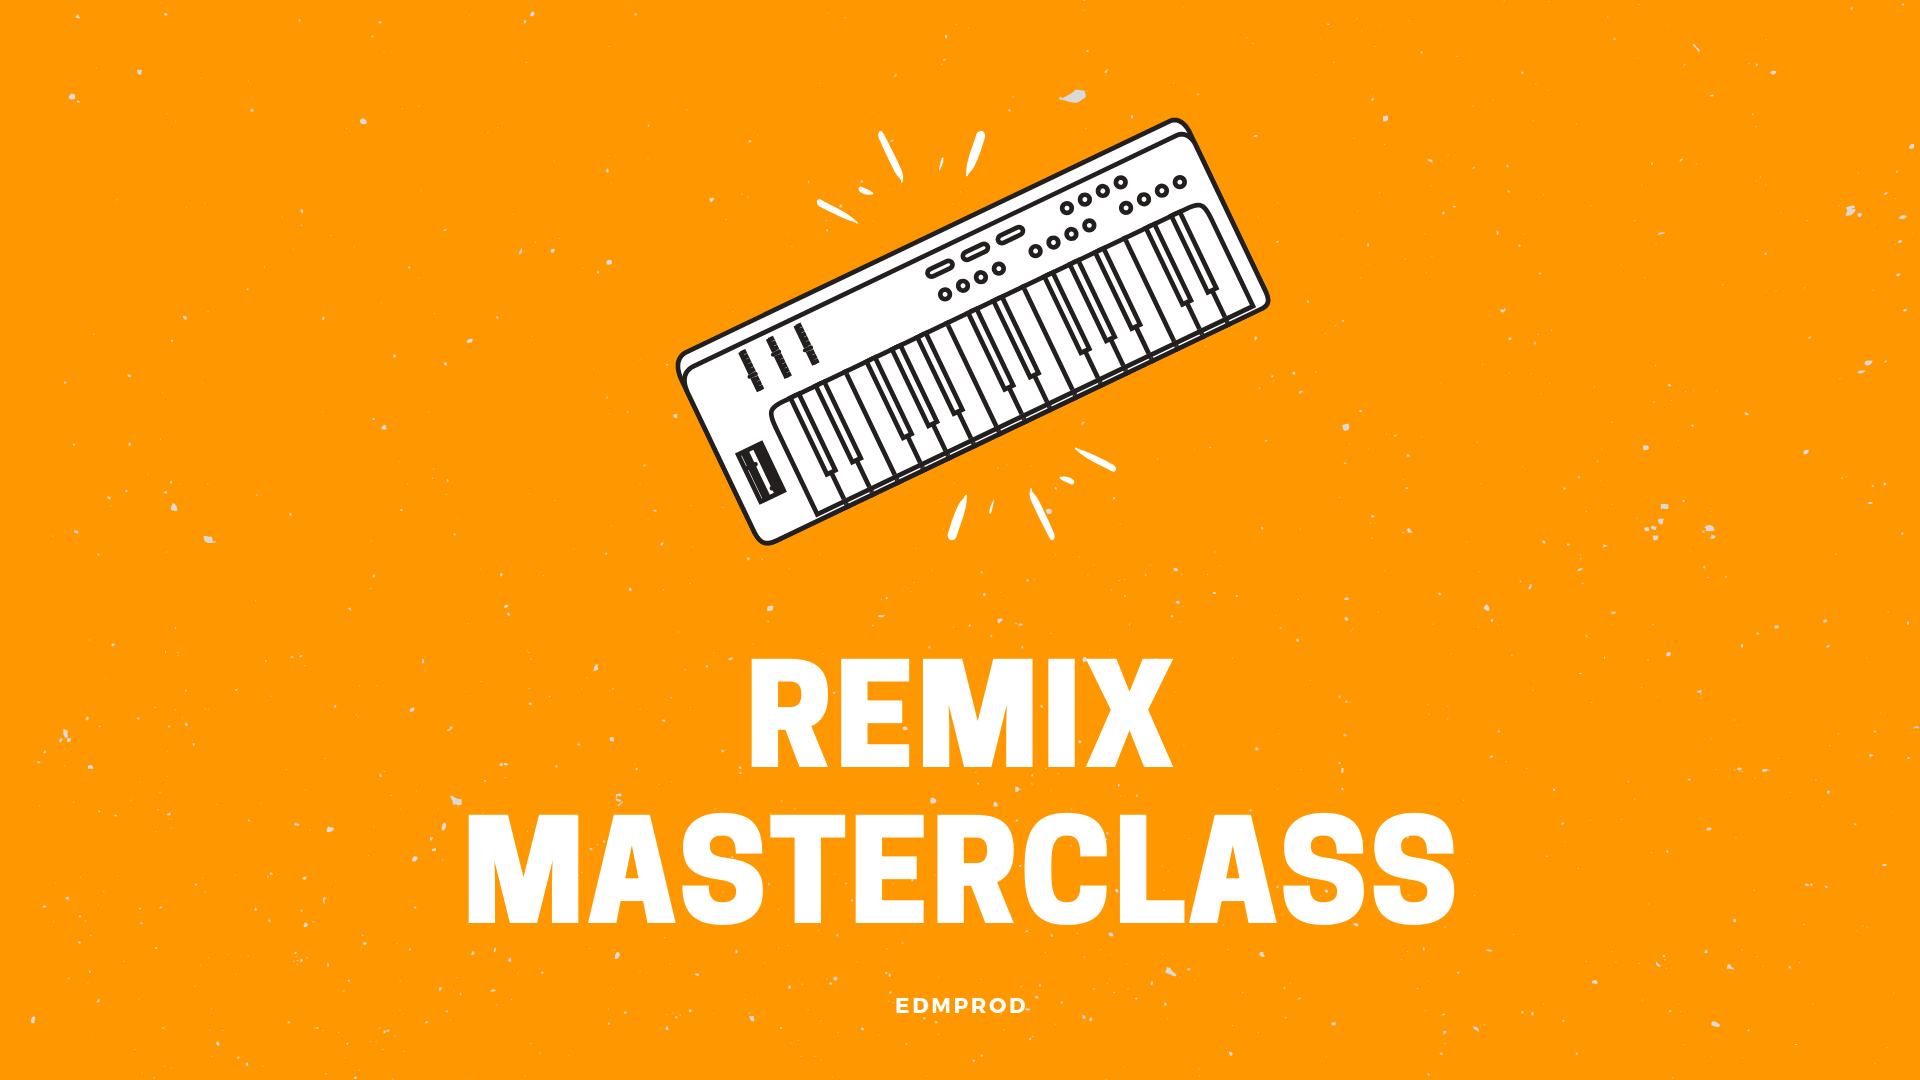 Connor O'Brien & Aden Russell - Remix Masterclass